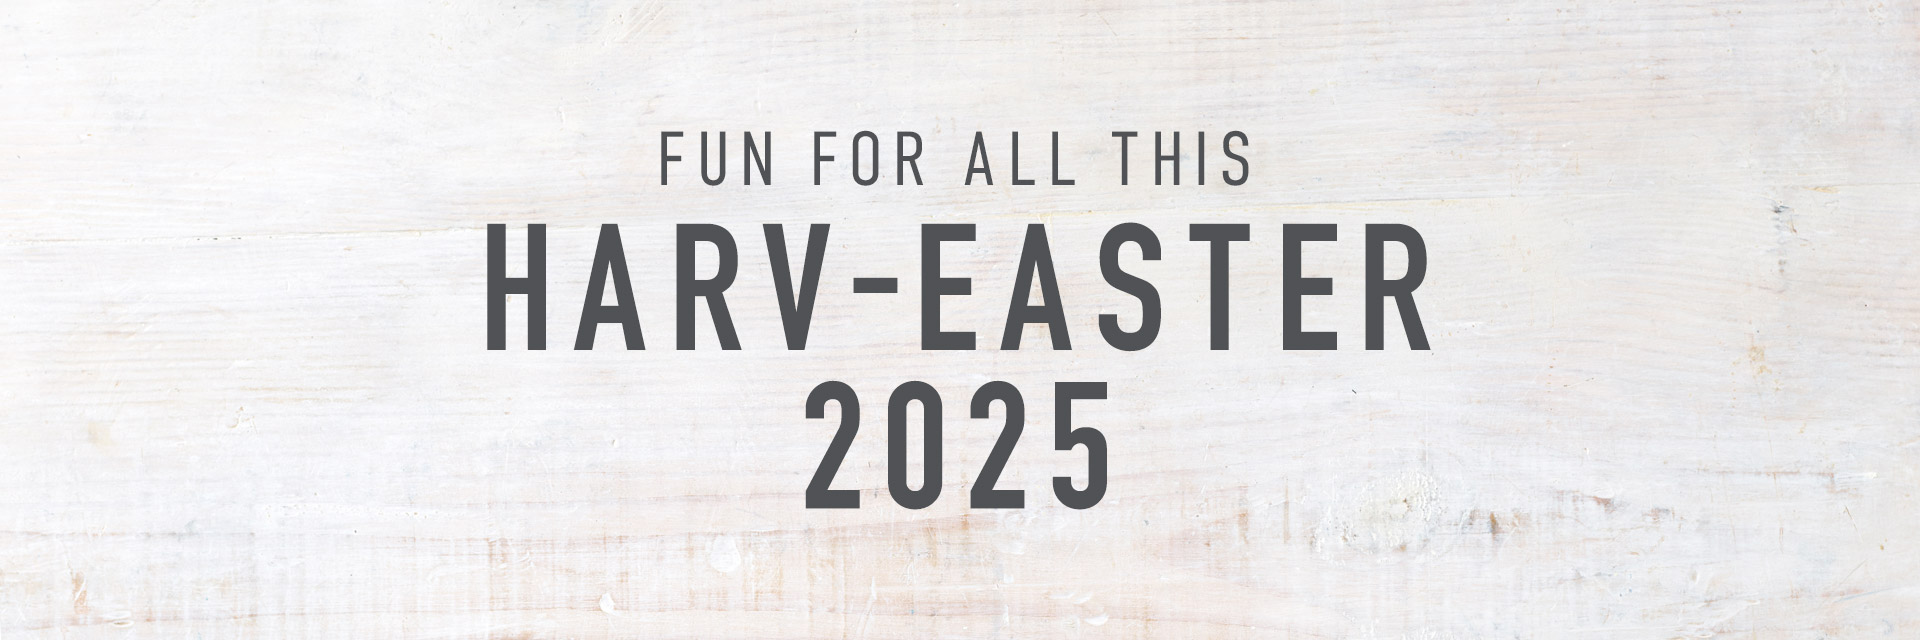 Easter at Harvester Pontypool in Pontypool 2025